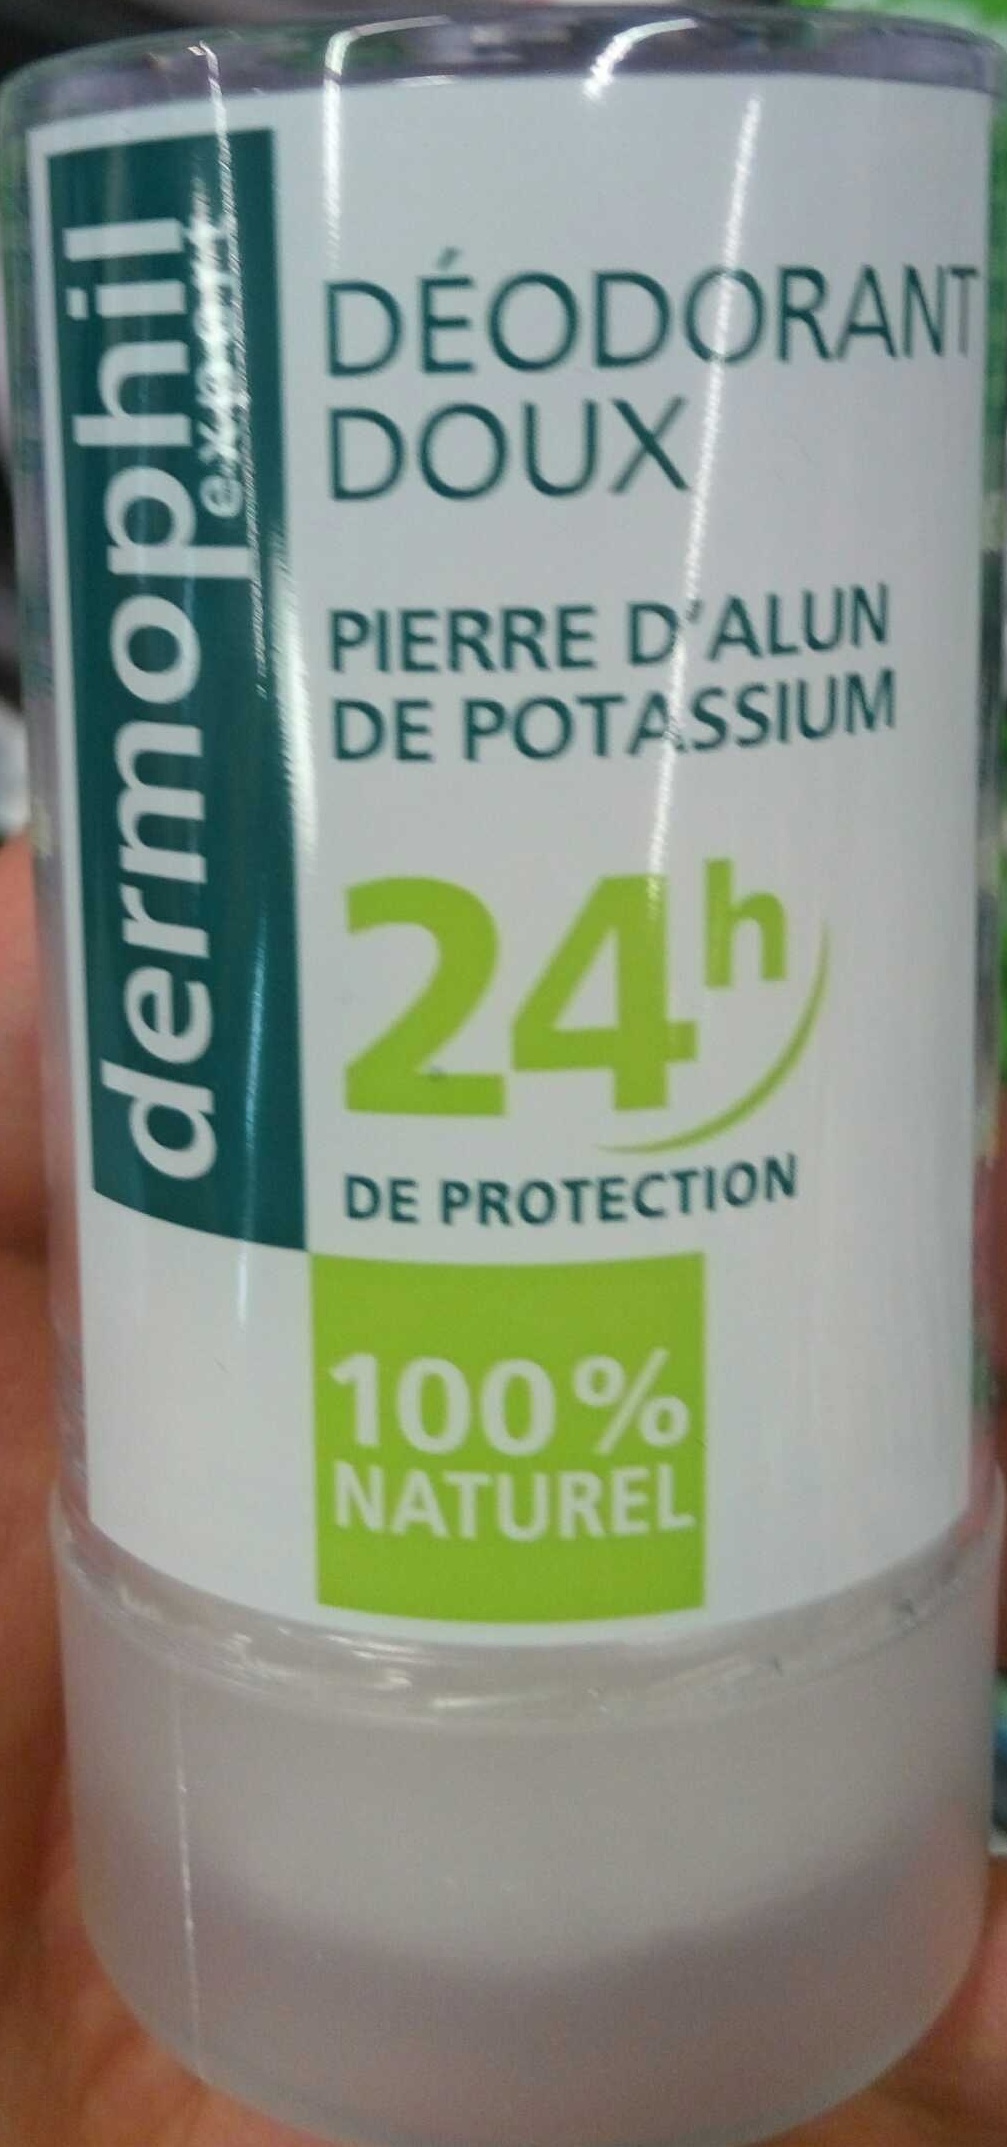 Déodorant doux Pierre d'Alun de Potassium 24H - Product - fr